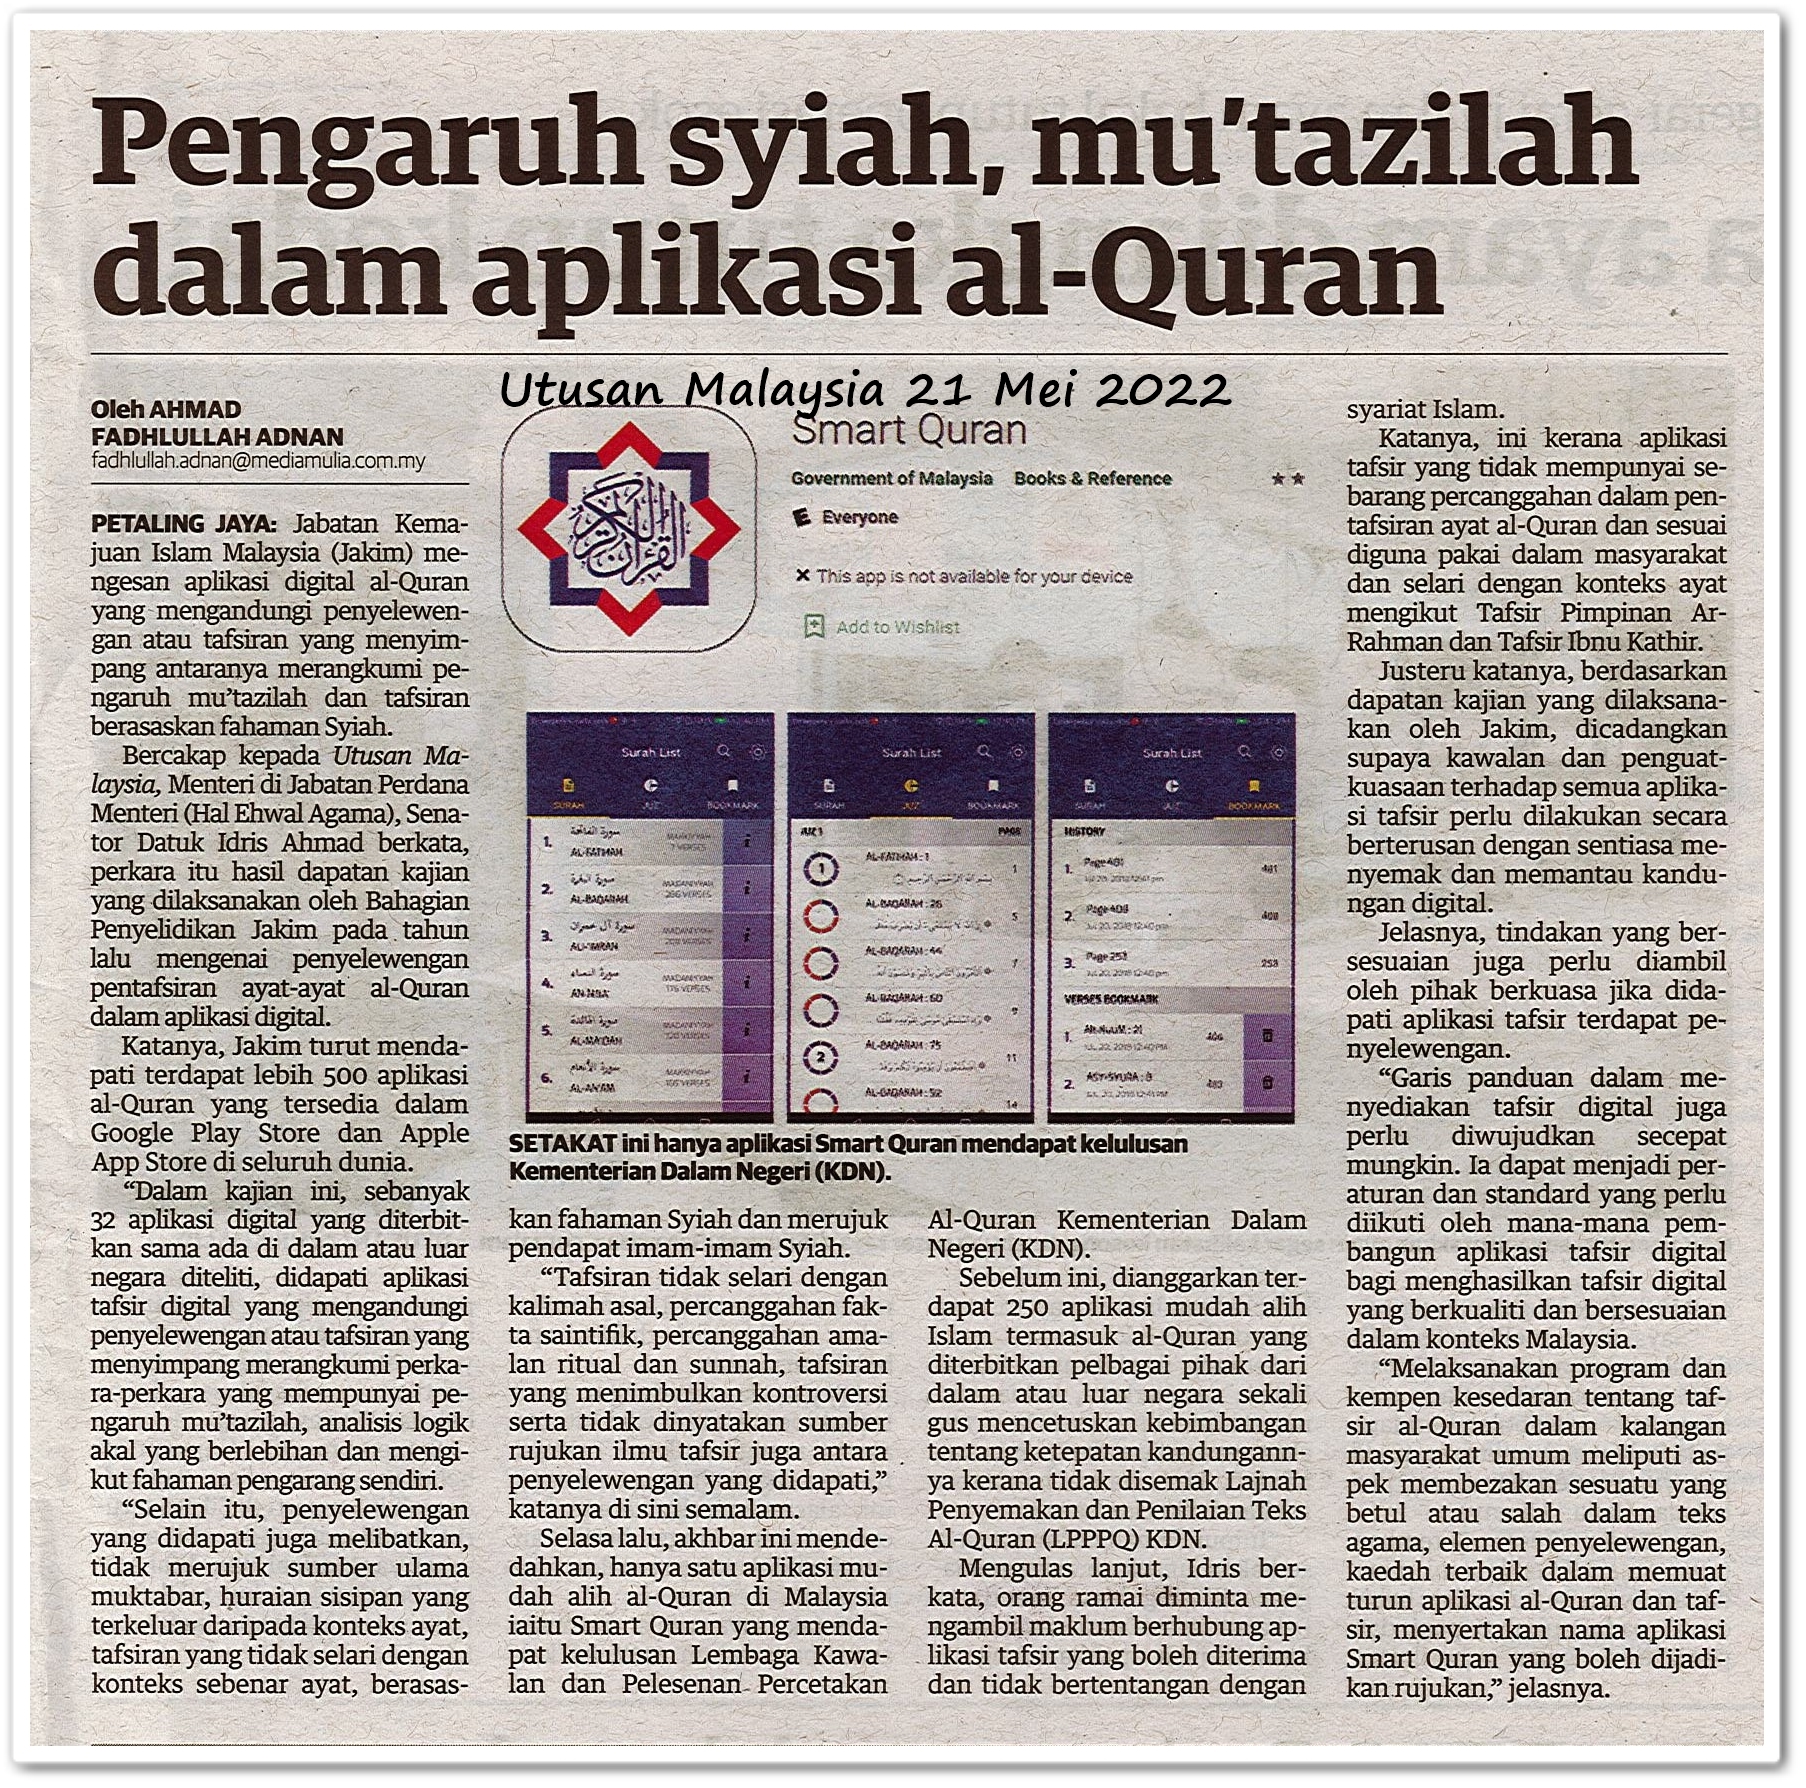 Pengaruh syiah, mu'tazilah dalam aplikasi al-Quran - Keratan akhbar Utusan Malaysia 21 Mei 2022